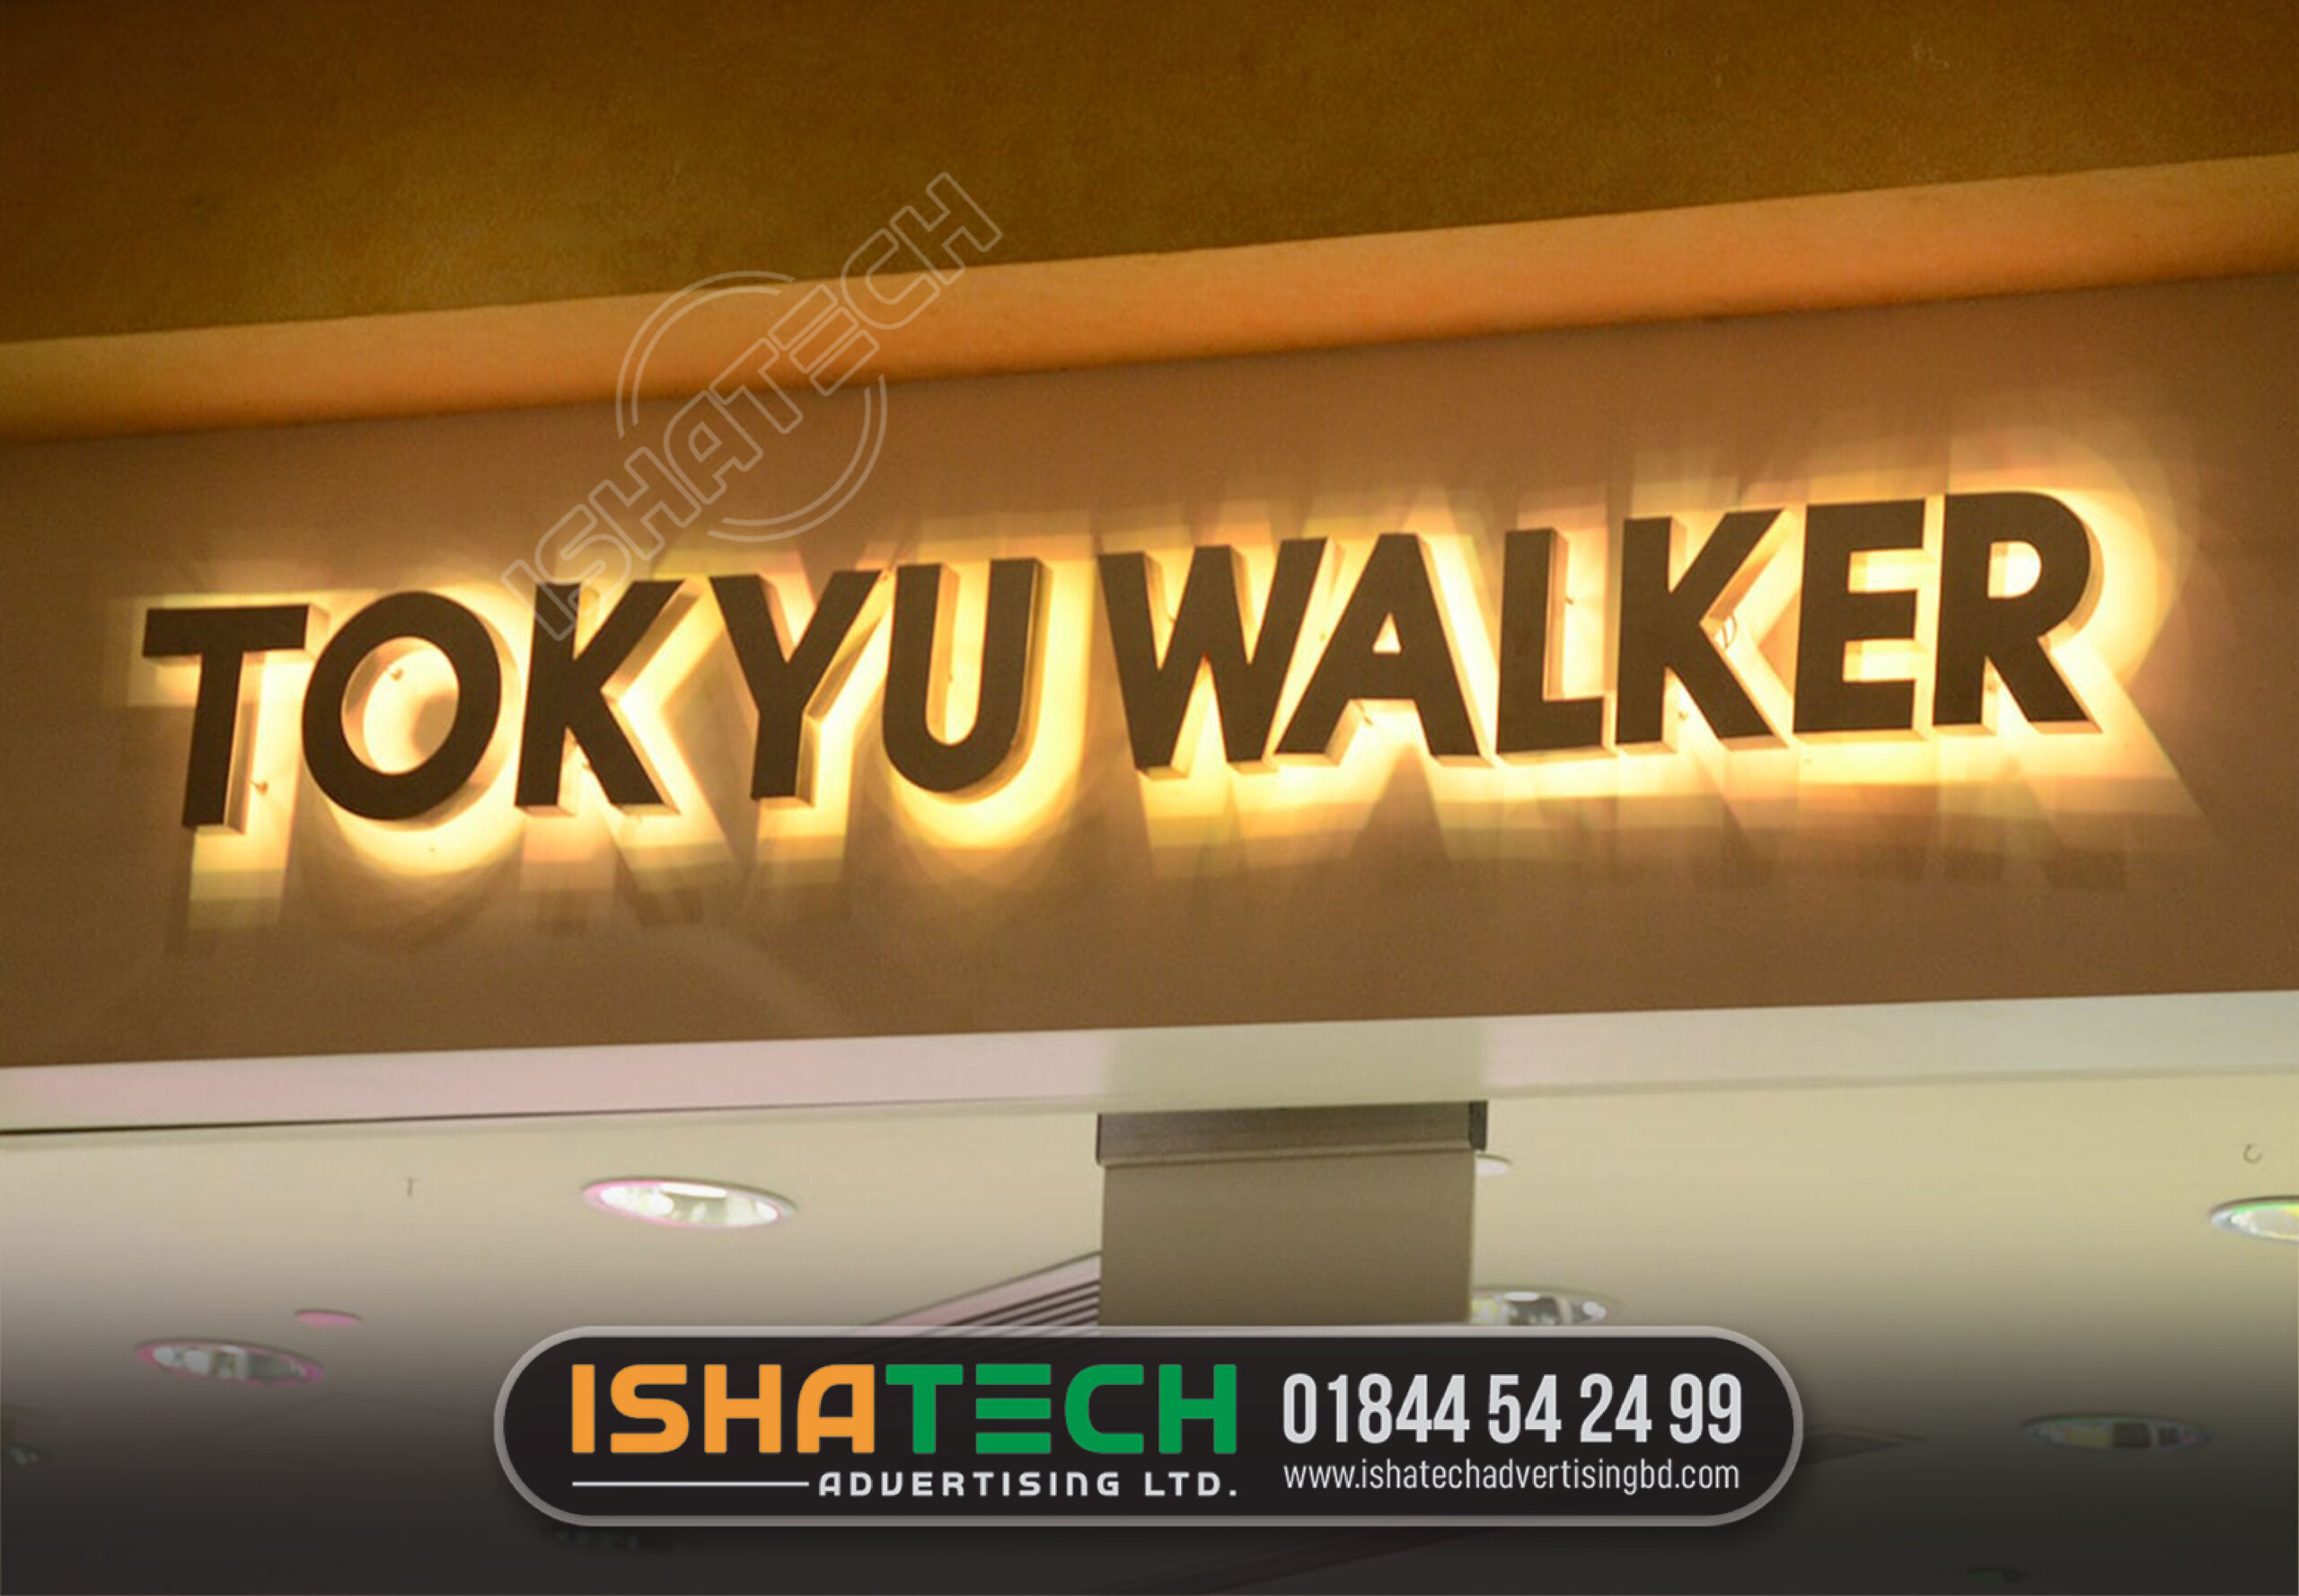 TOKYU WALKER BACKLIGHT METAL LETTER SIGNAGE MAKING BD